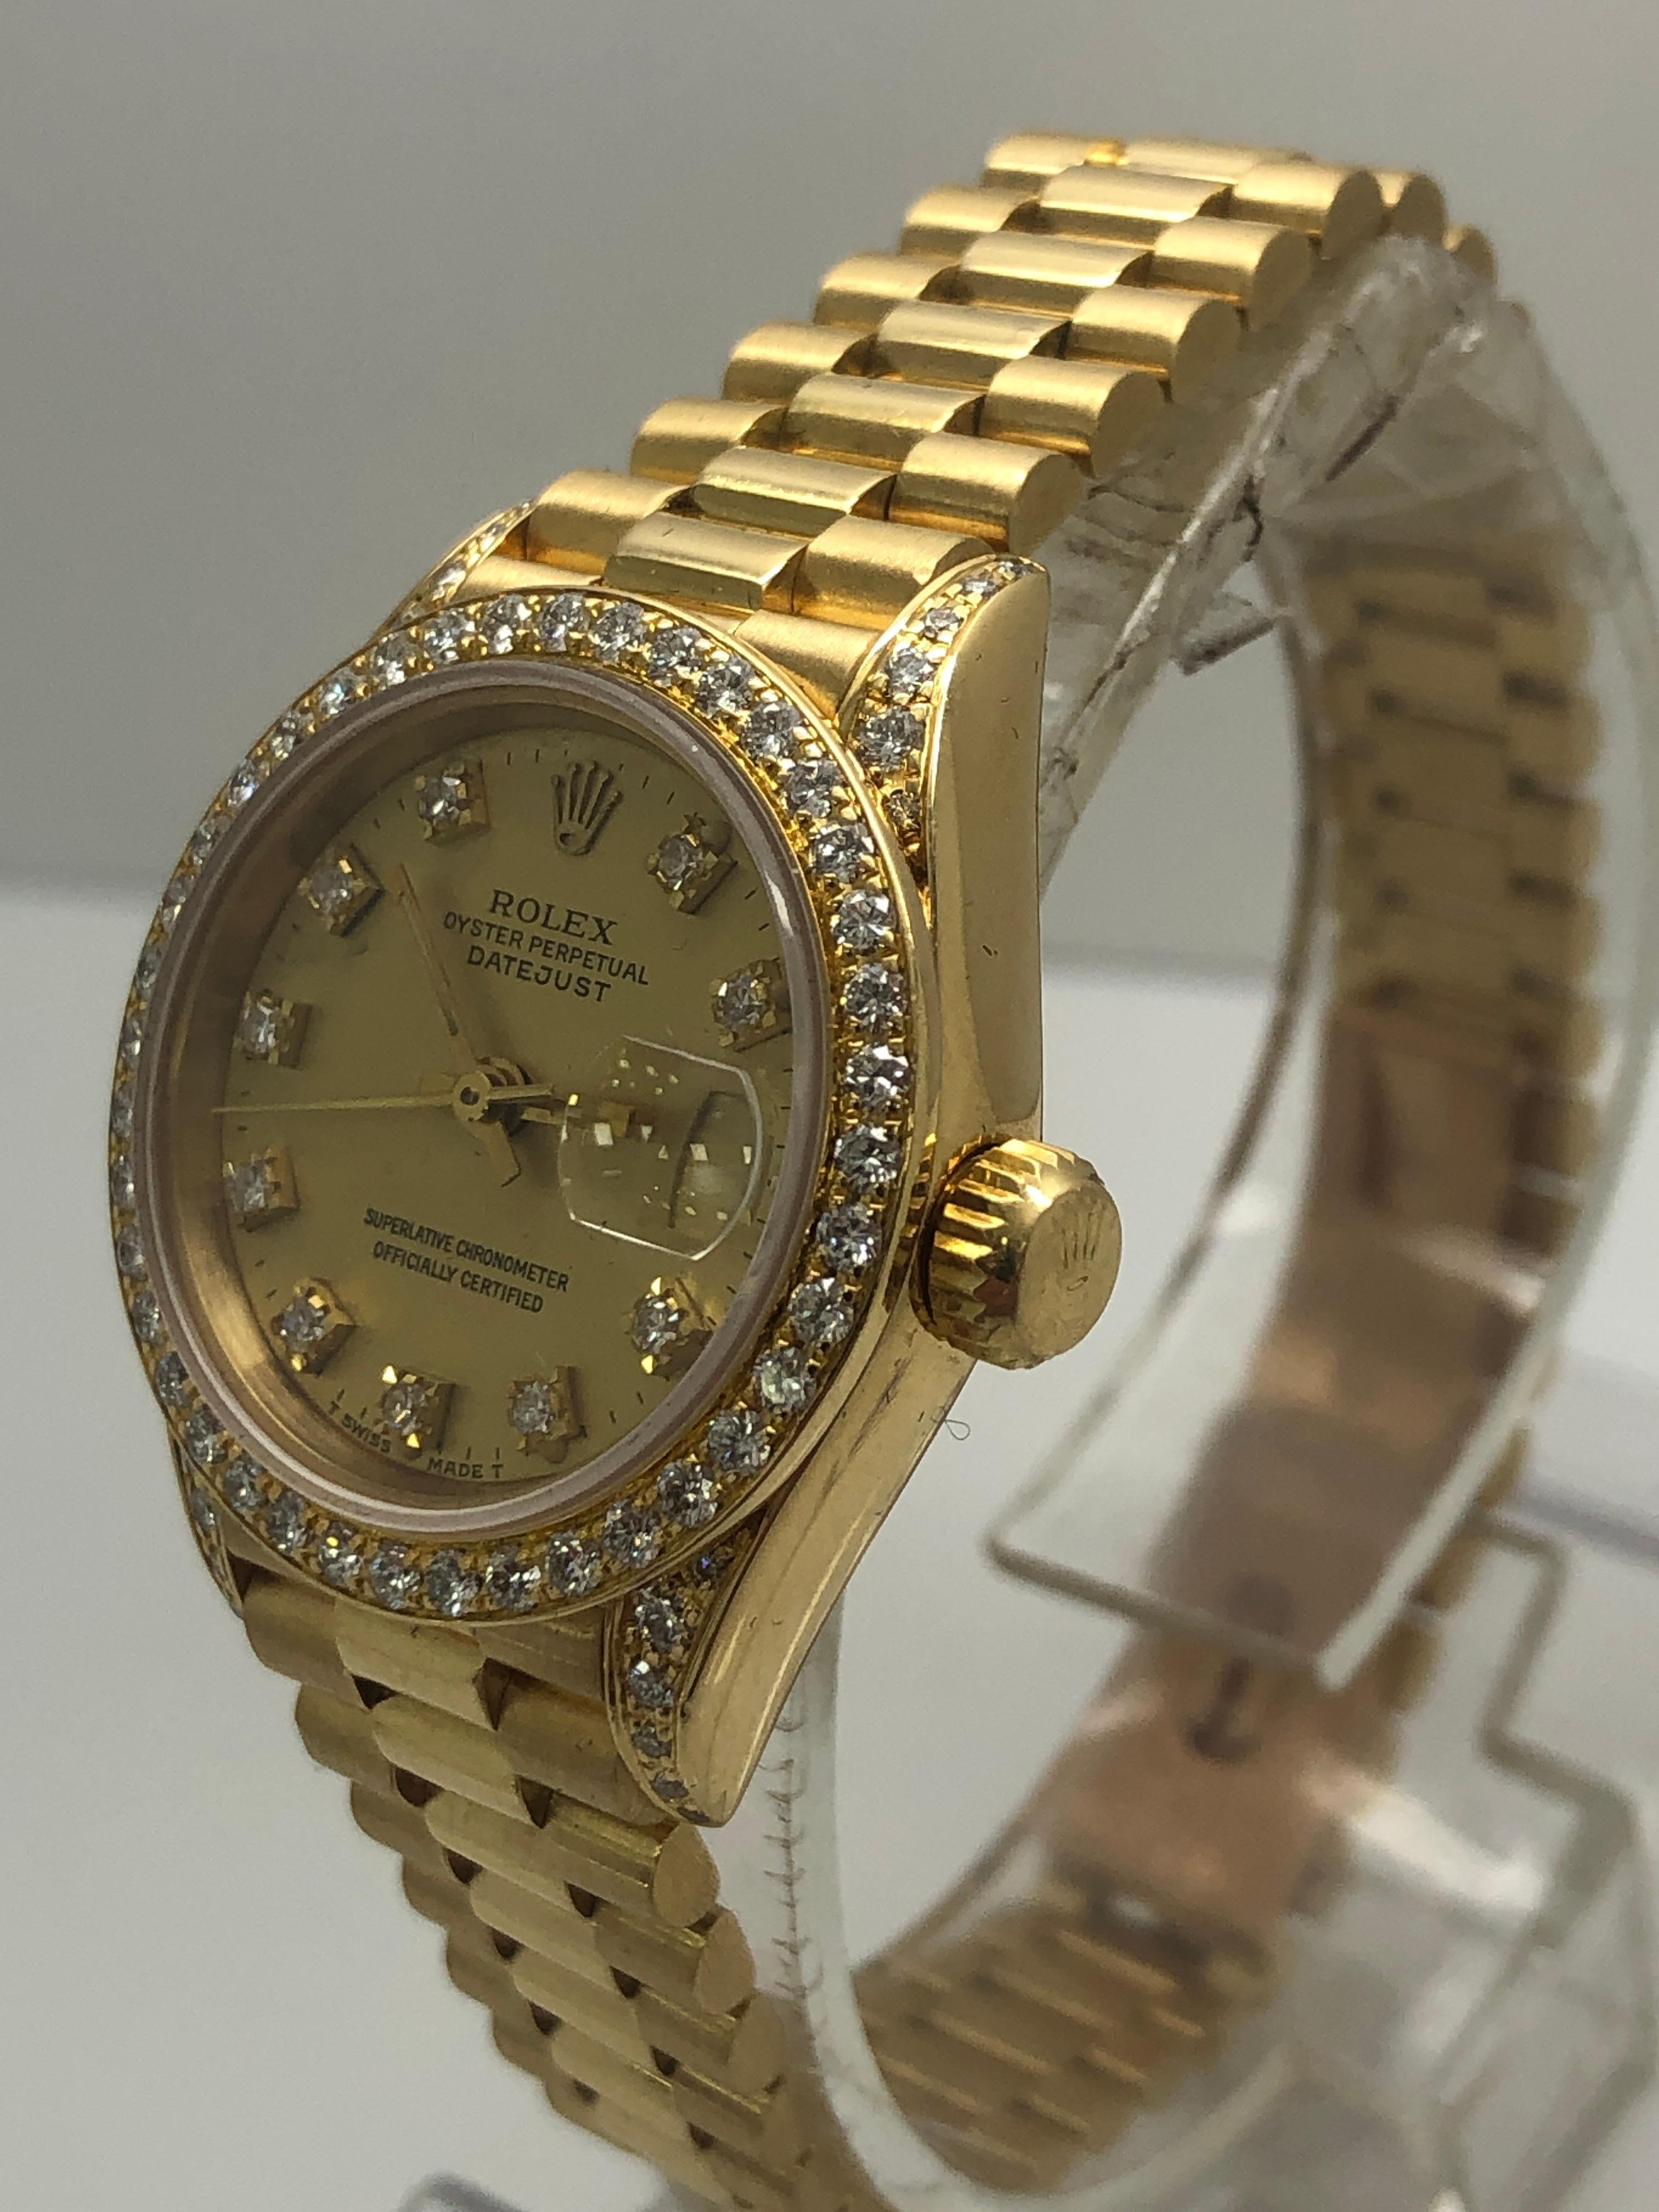 Rolex Datejust Damen Original Diamant Uhr

sehr guter Zustand - läuft perfekt

alles original mit Diamanten von Rolex

Kostenloser Versand über Nacht

mit Vertrauen einkaufen